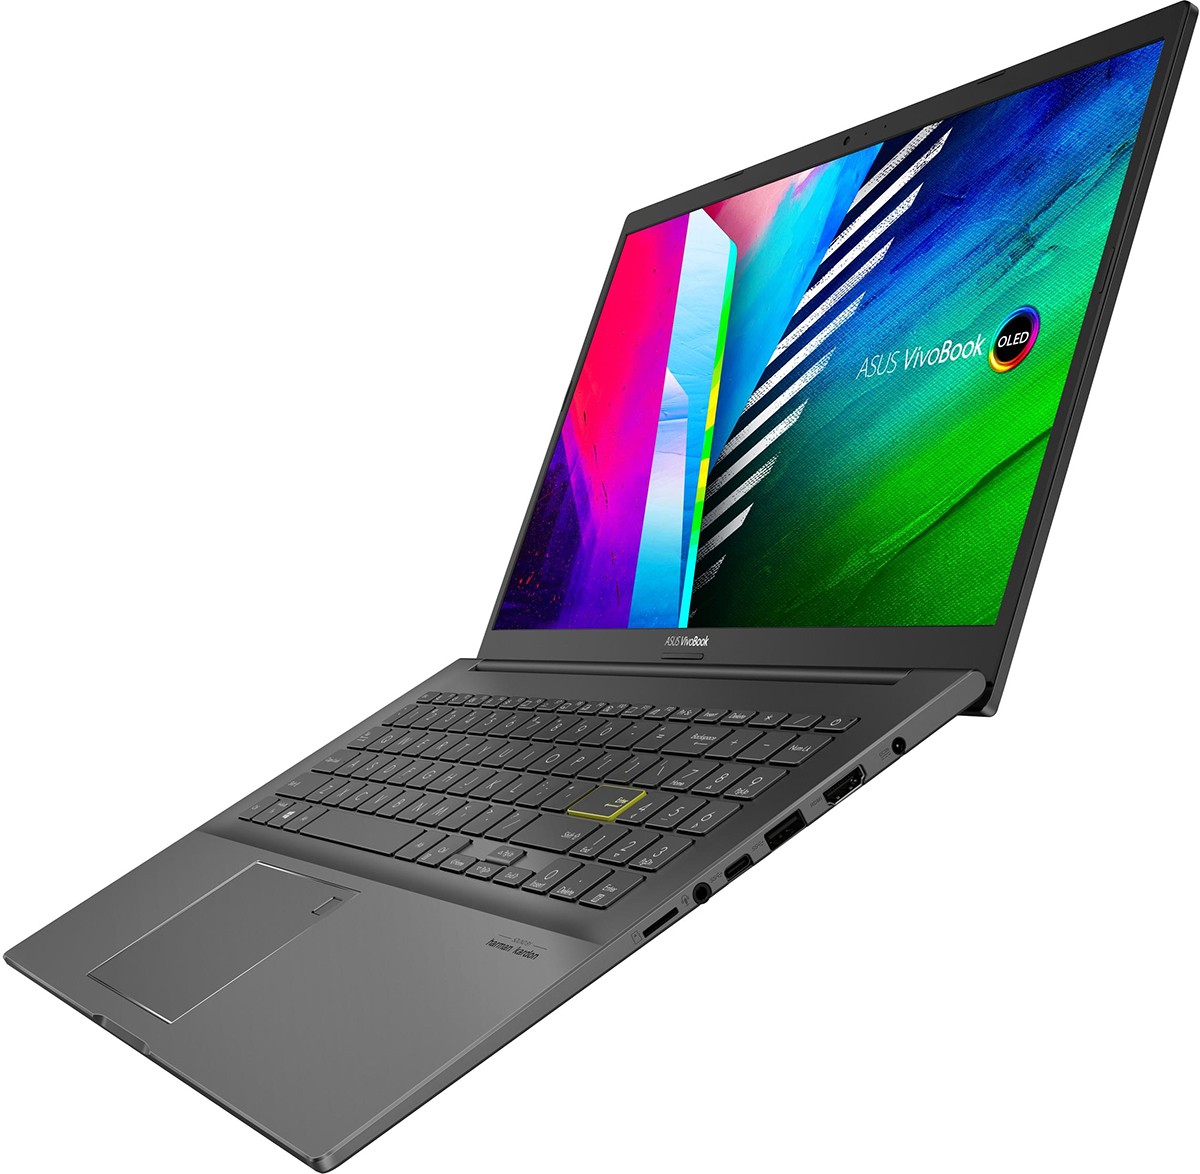 Ноутбук Asus Vivobook K513ea Bq164t Купить